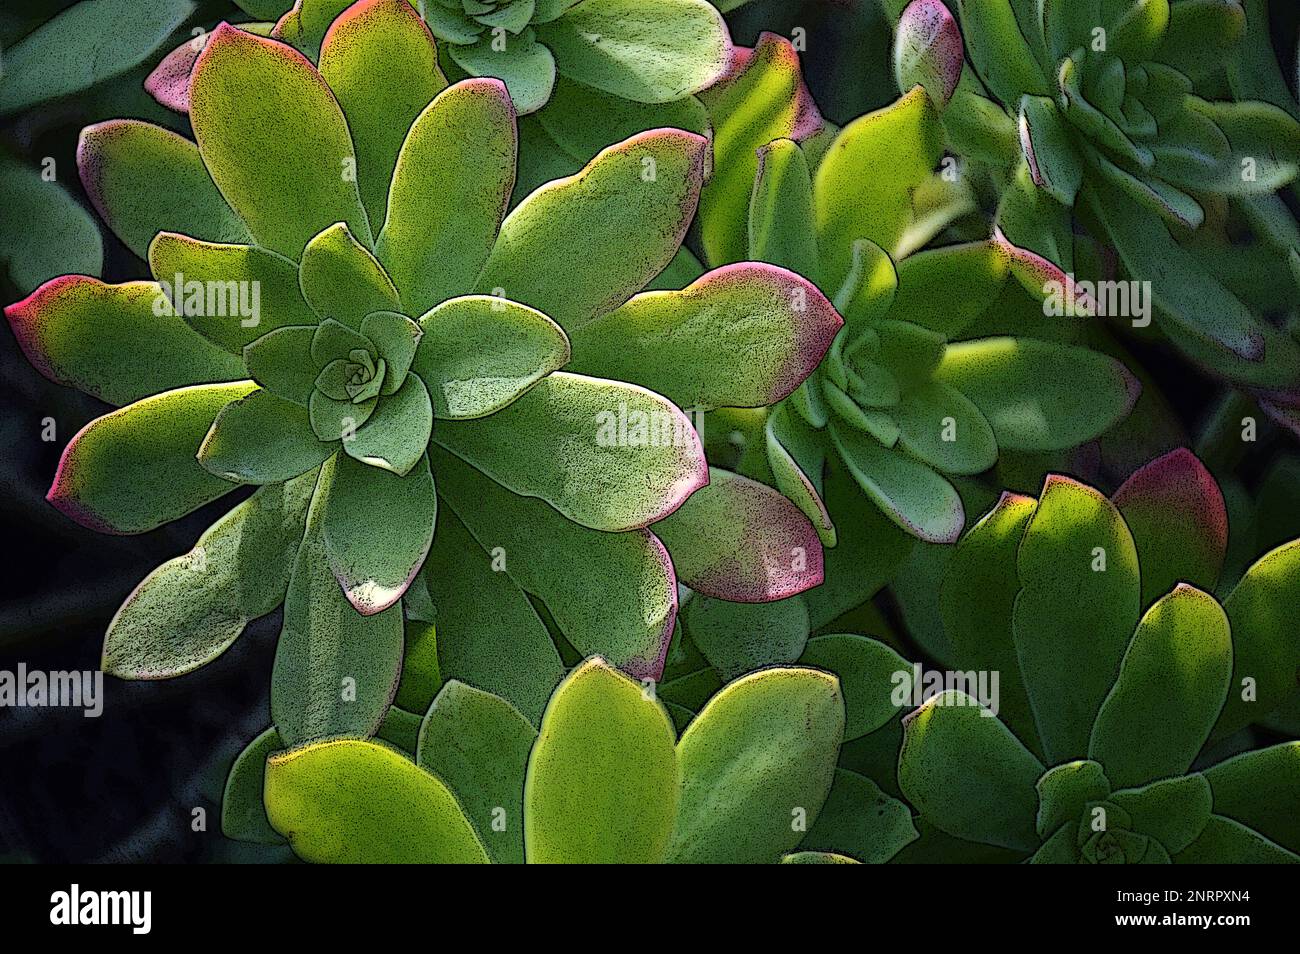 Top view of Sedum palmeri succulent plant illustration Stock Photo